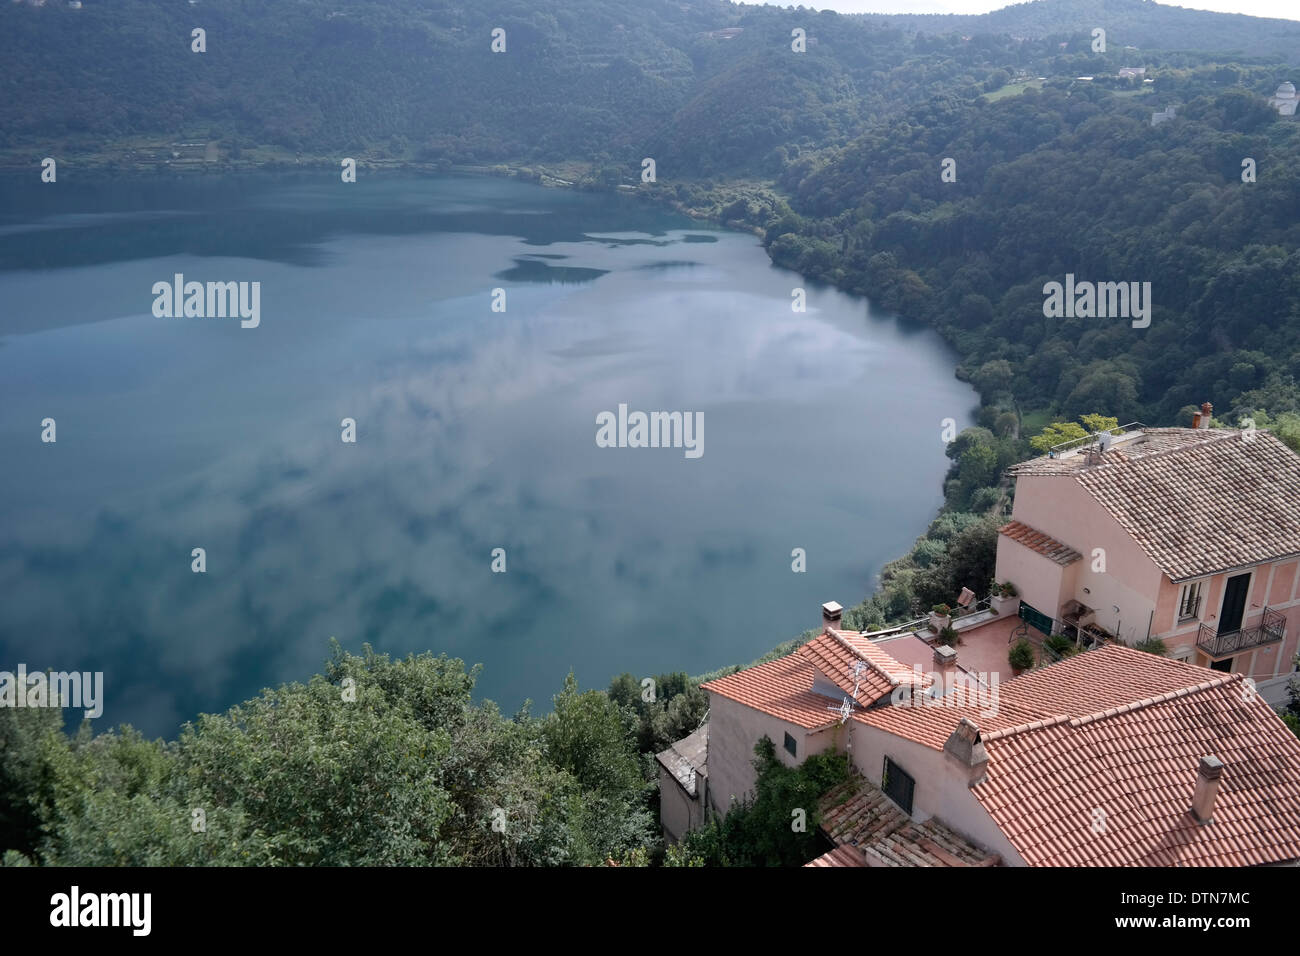 Castel Gandolfo Lake, Castel Gandolfo, Italy Stock Photo